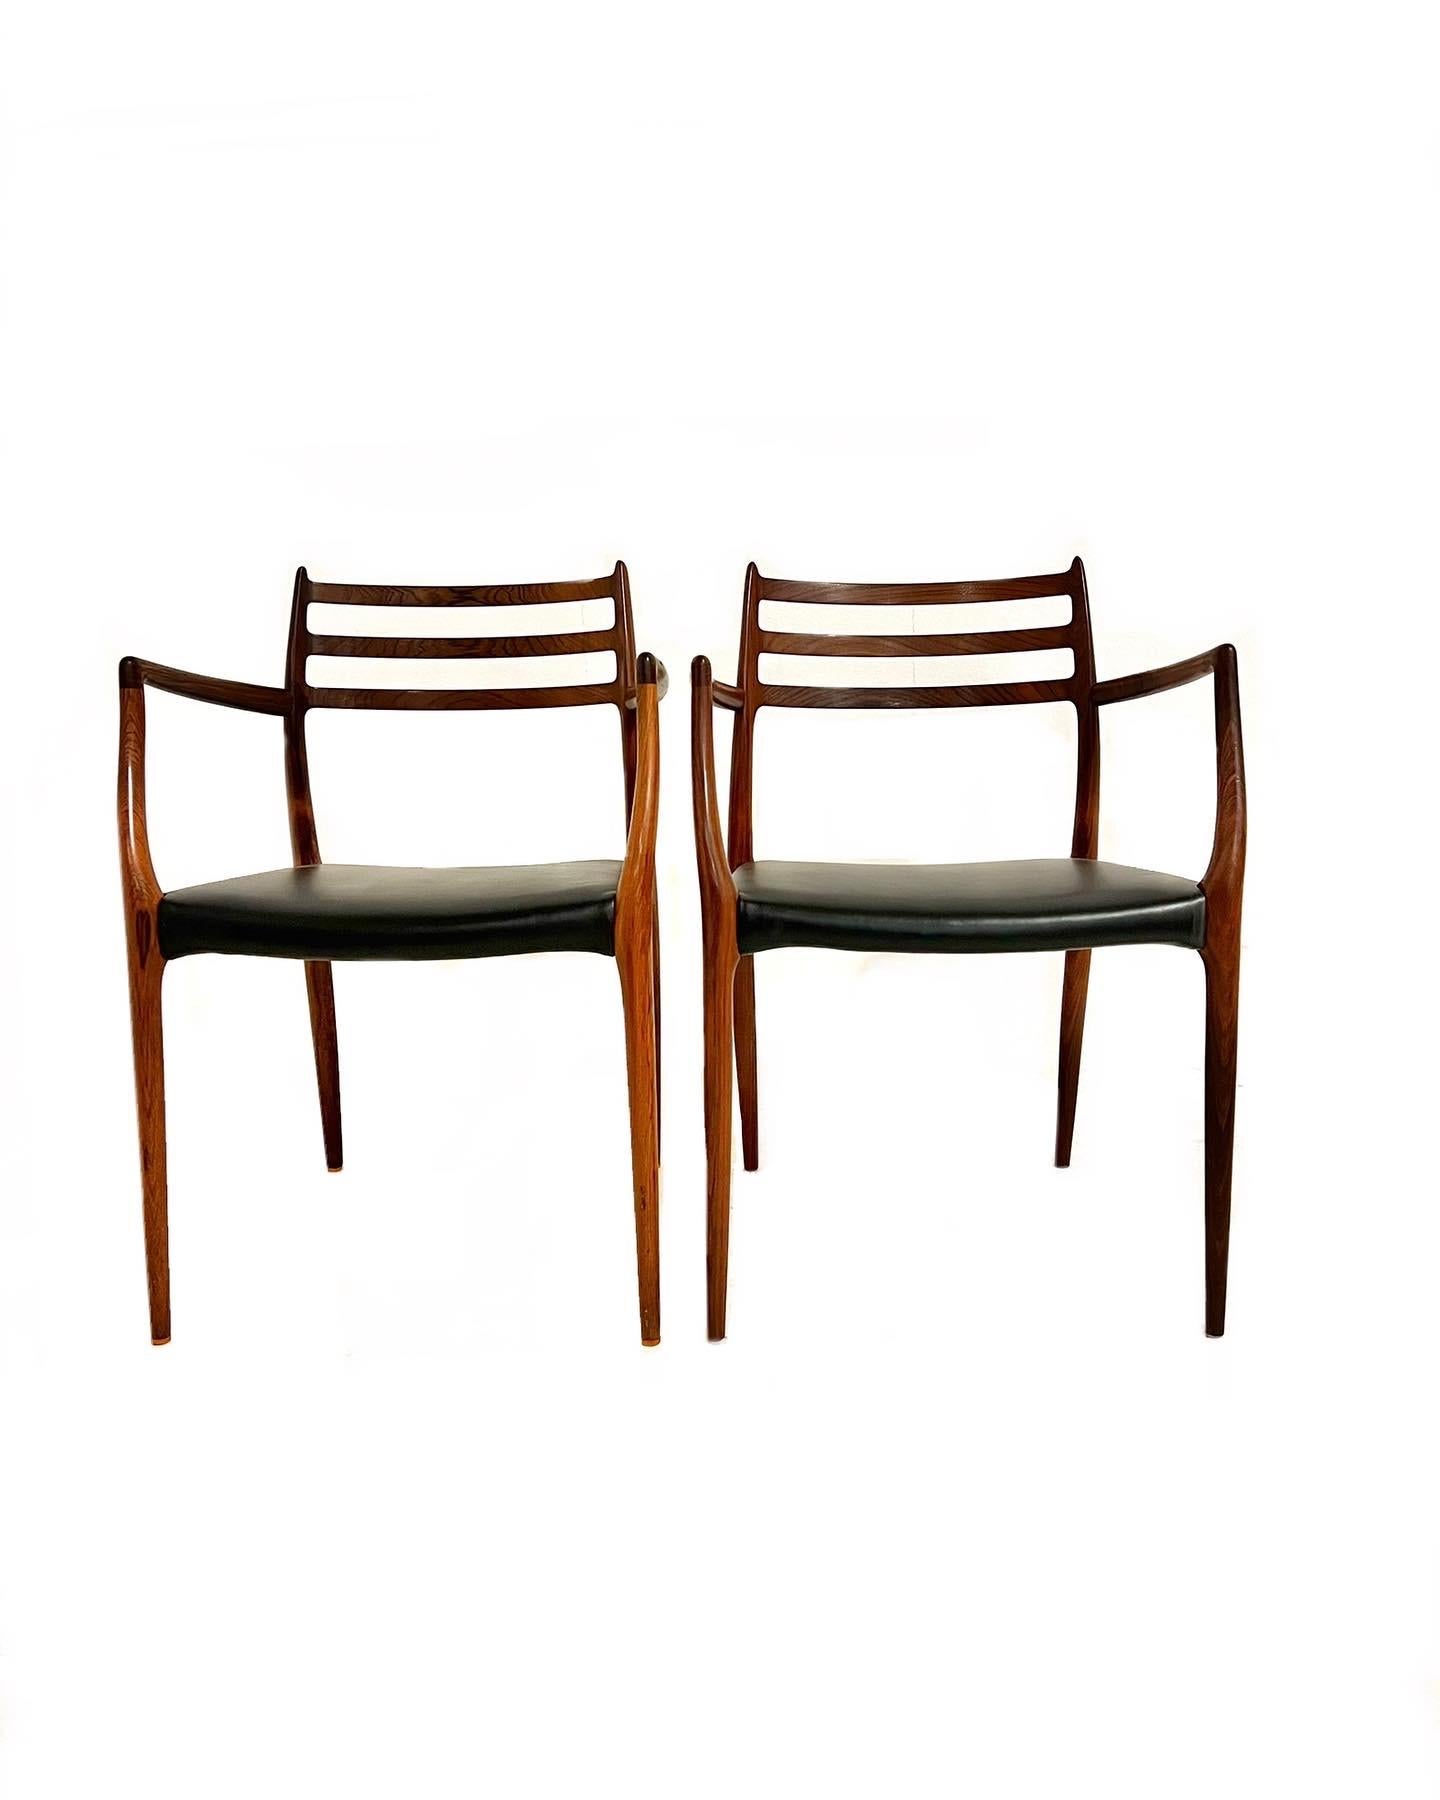 Niels Otto Møller, -paire de fauteuils en bois de rose, modèle 62, pour I.L.A. Møller, conçue en 1962. Ils ont été recouverts de cuir aniline noir. Un ensemble de fauteuils difficile à trouver, et une chaise où les lignes et les courbes organiques